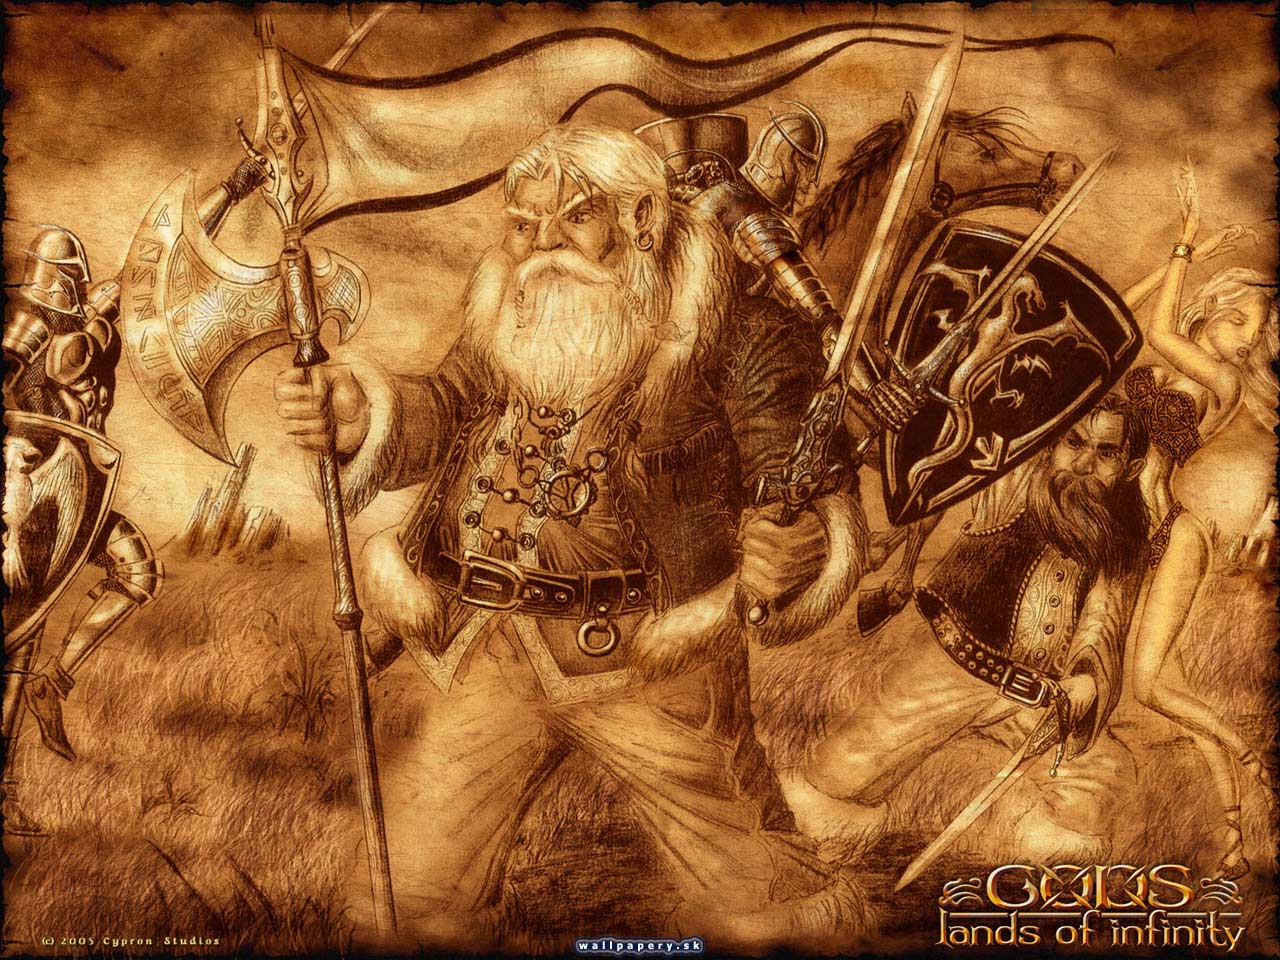 Gods: Lands of Infinity - wallpaper 10